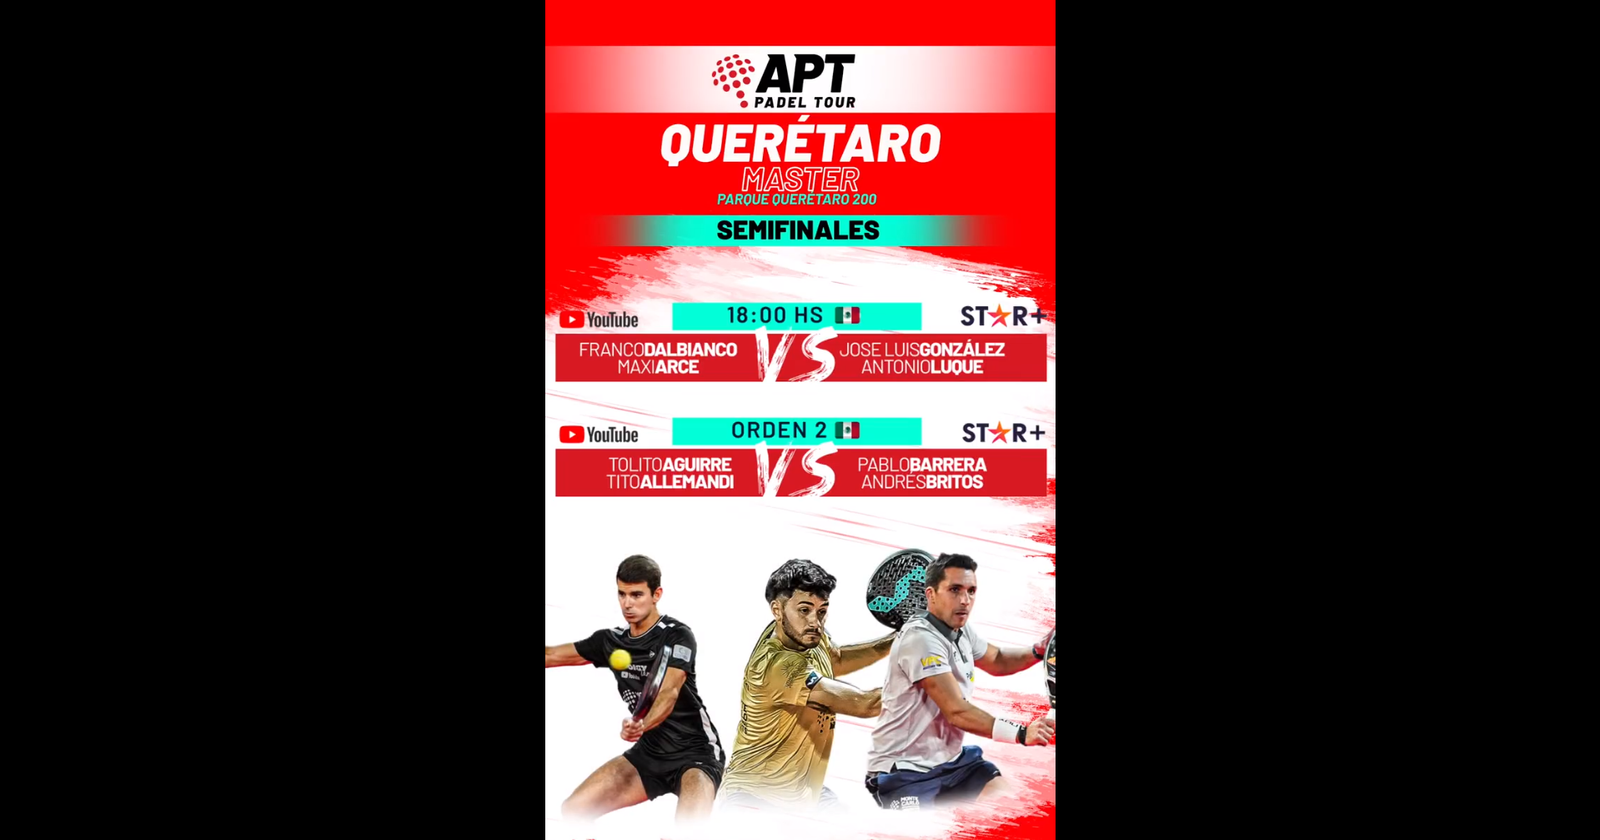 Semifinales del APT Querétaro Master: hora, TV y por dónde verlo en vivo online